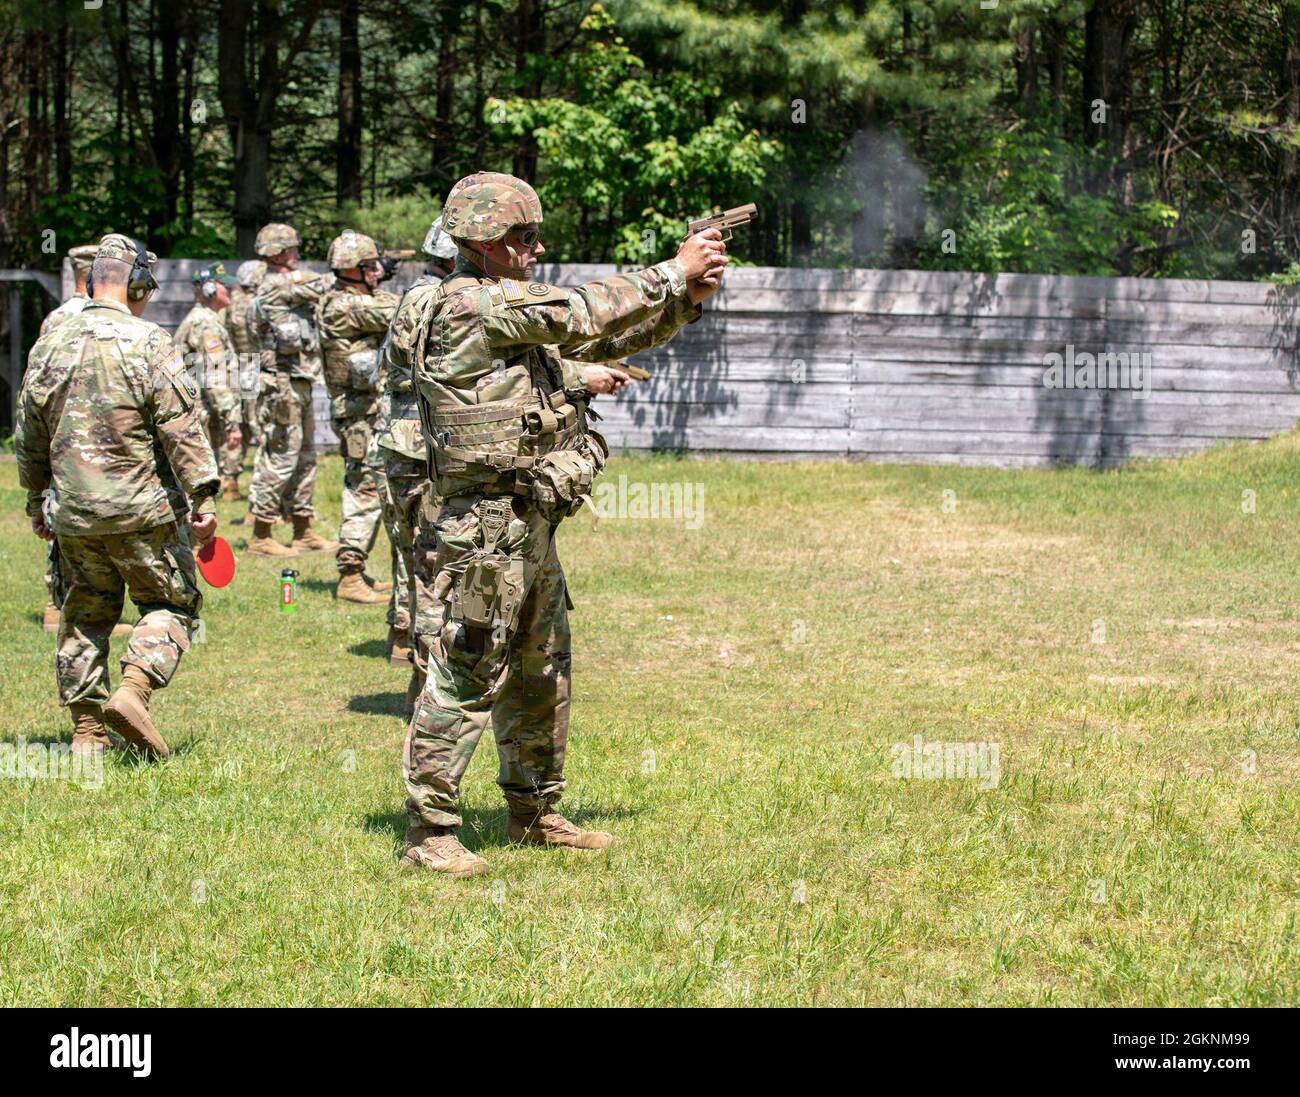 Soldaten der US-Armee, die dem Hauptquartier der Joint Force, der Nationalgarde der Vermont-Armee, zugewiesen wurden, trainieren auf dem neuen M17-Waffensystem auf dem Trainingsgelände von Camp Ethan Allen, in der Stadt, 7. Juni 2021. Die Soldaten machen sich mit den neuen Pistolenqualifizierungstabellen vertraut. Stockfoto